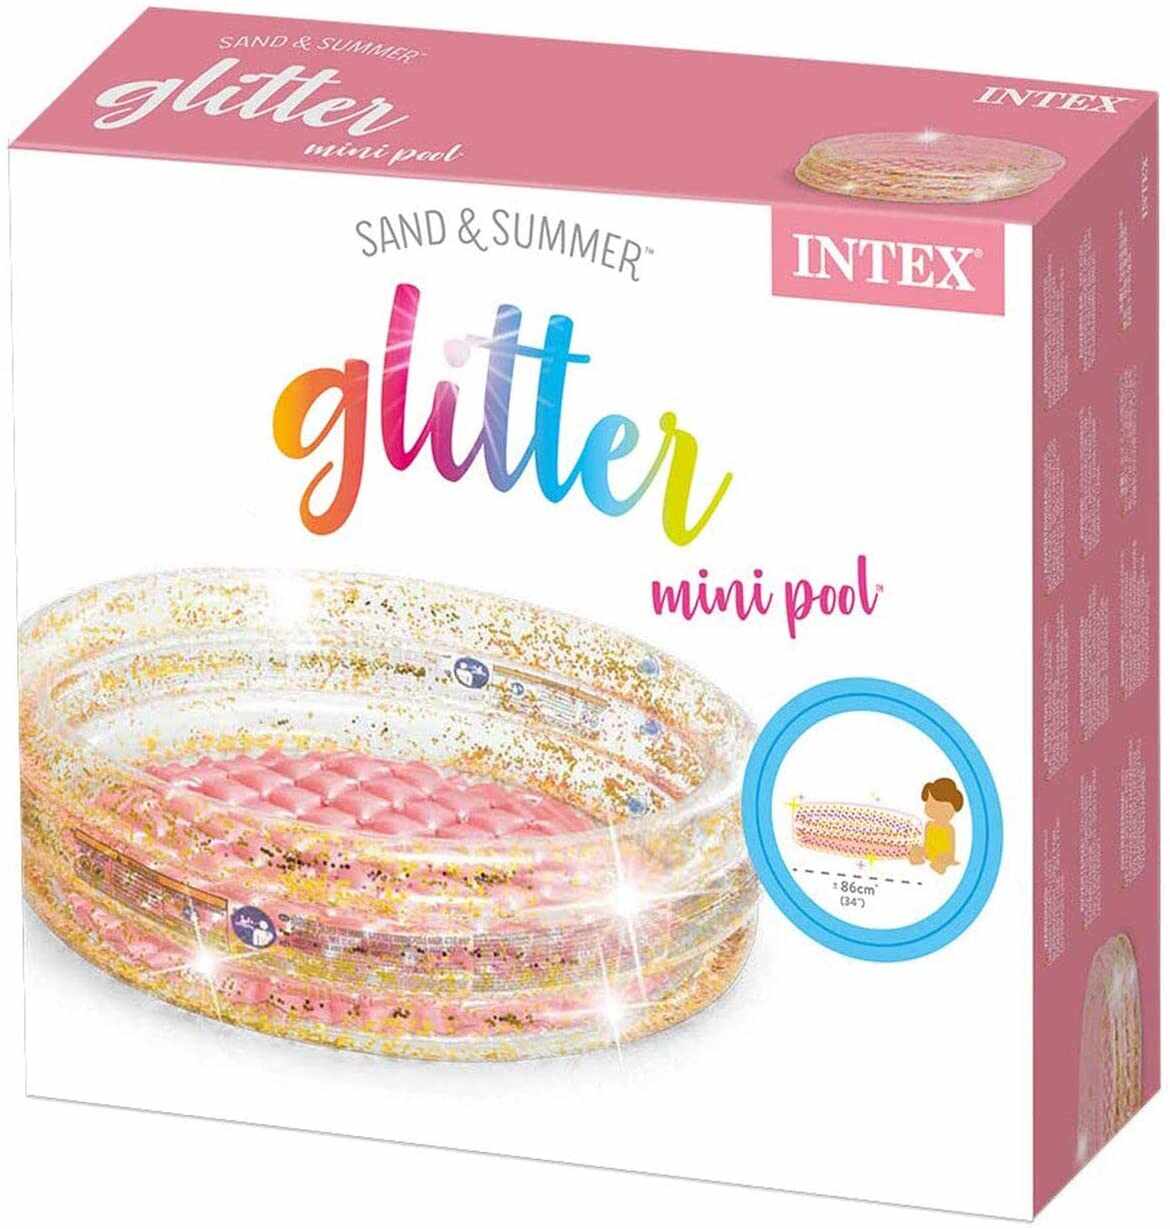 INTEX Glitter Mini Pool (86 X 86 X 25)